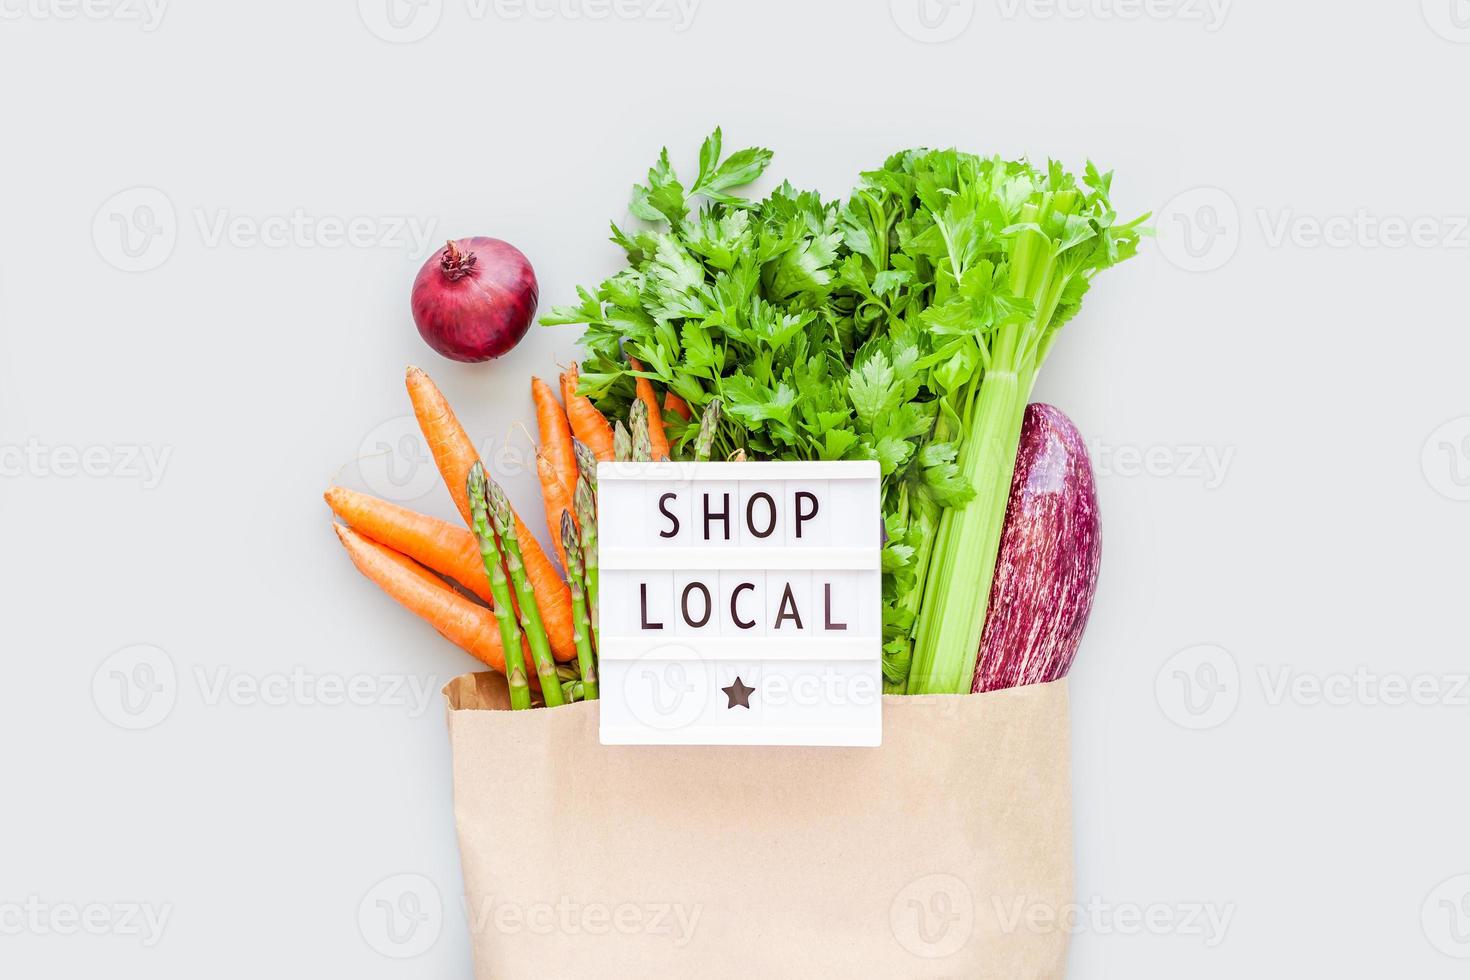 legumes orgânicos frescos na sacola de compras de artesanato foto